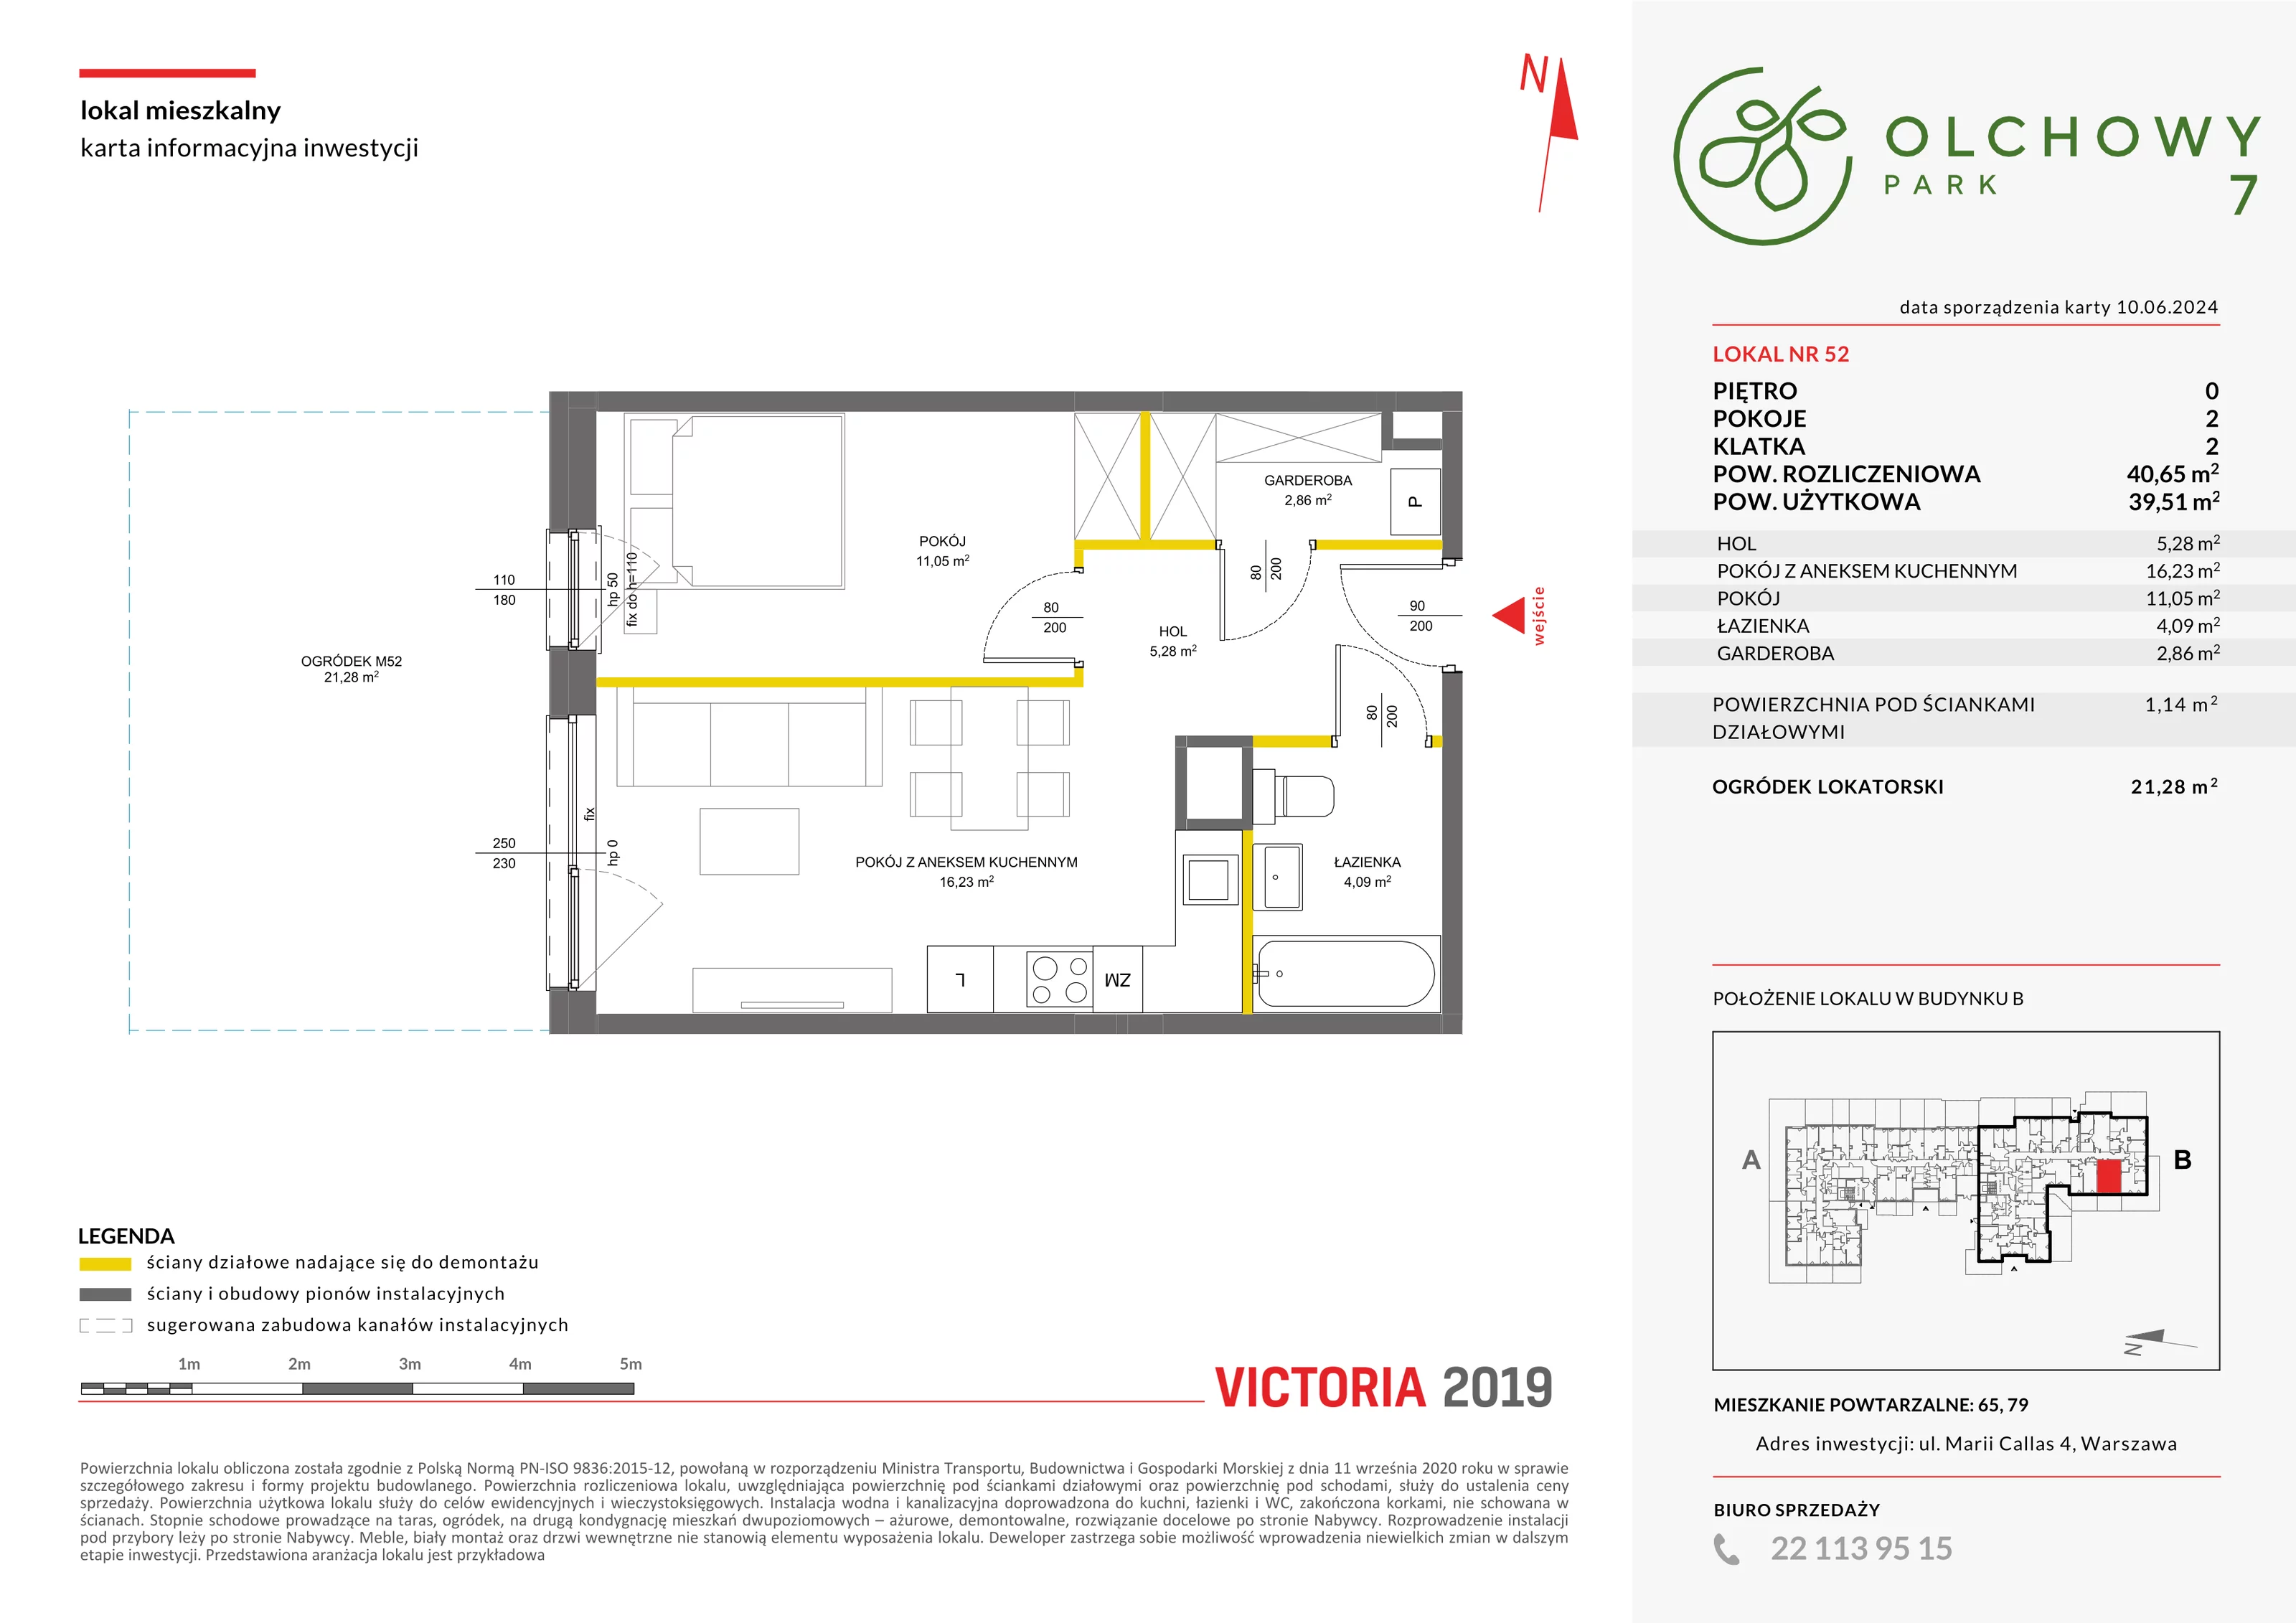 Mieszkanie 40,65 m², parter, oferta nr VII/52, Olchowy Park 7, Warszawa, Białołęka, Kobiałka, ul. Marii Callas 4A